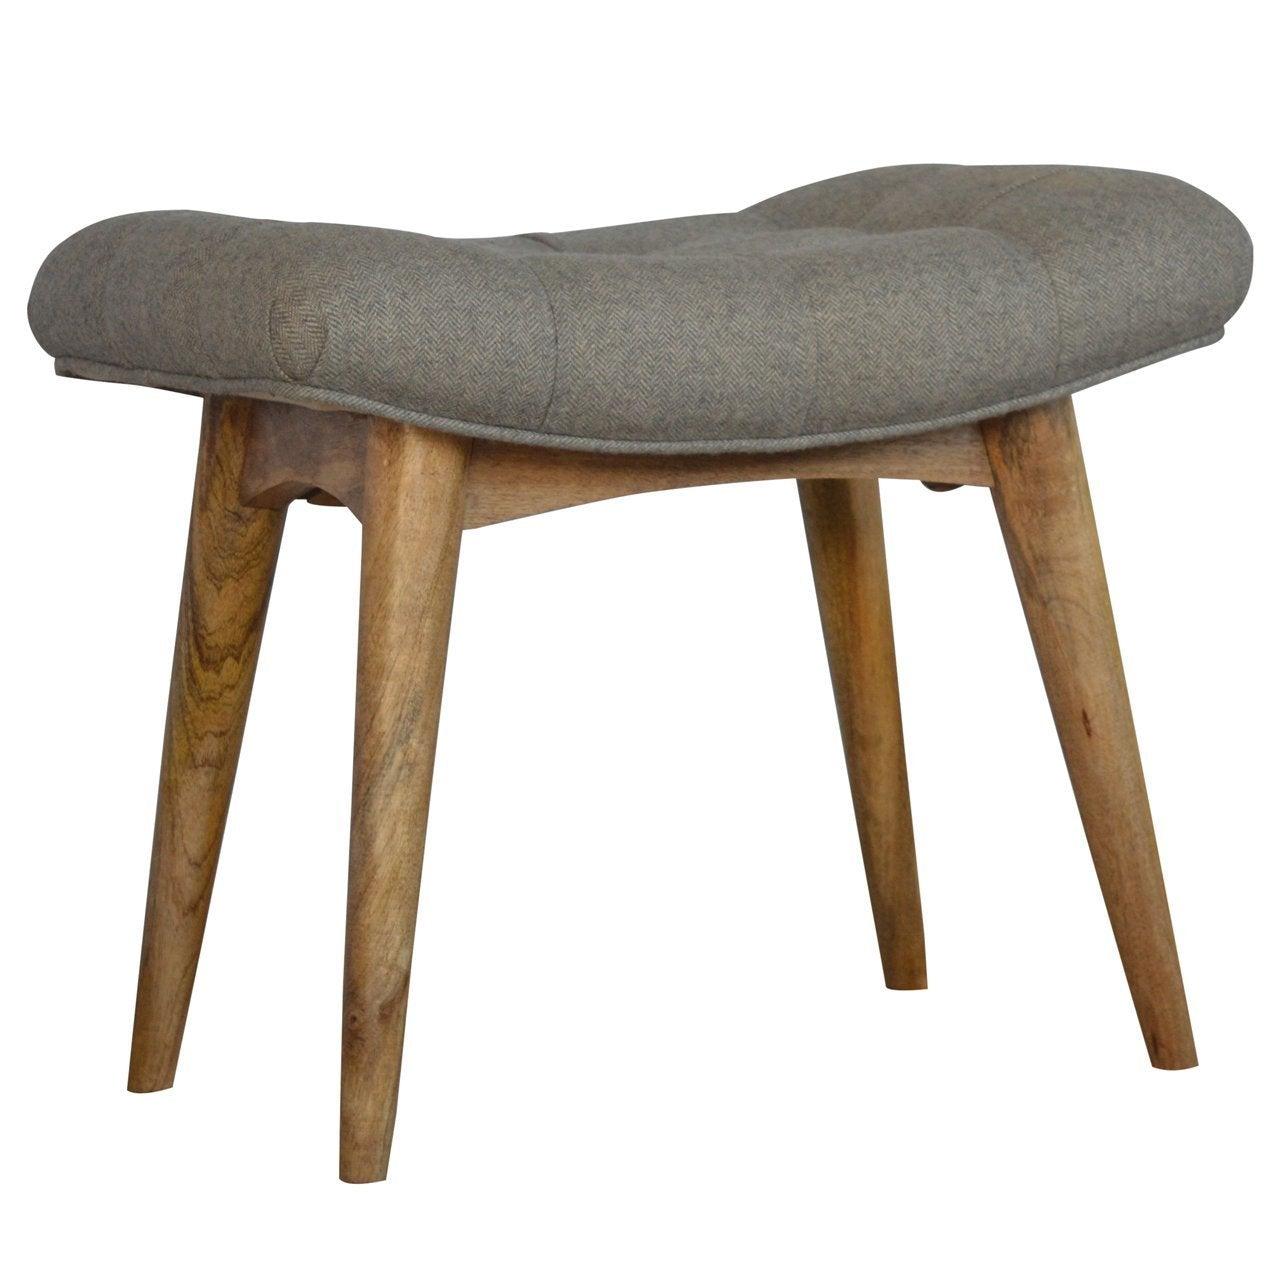 Curved grey tweed bench - crimblefest furniture - image 1